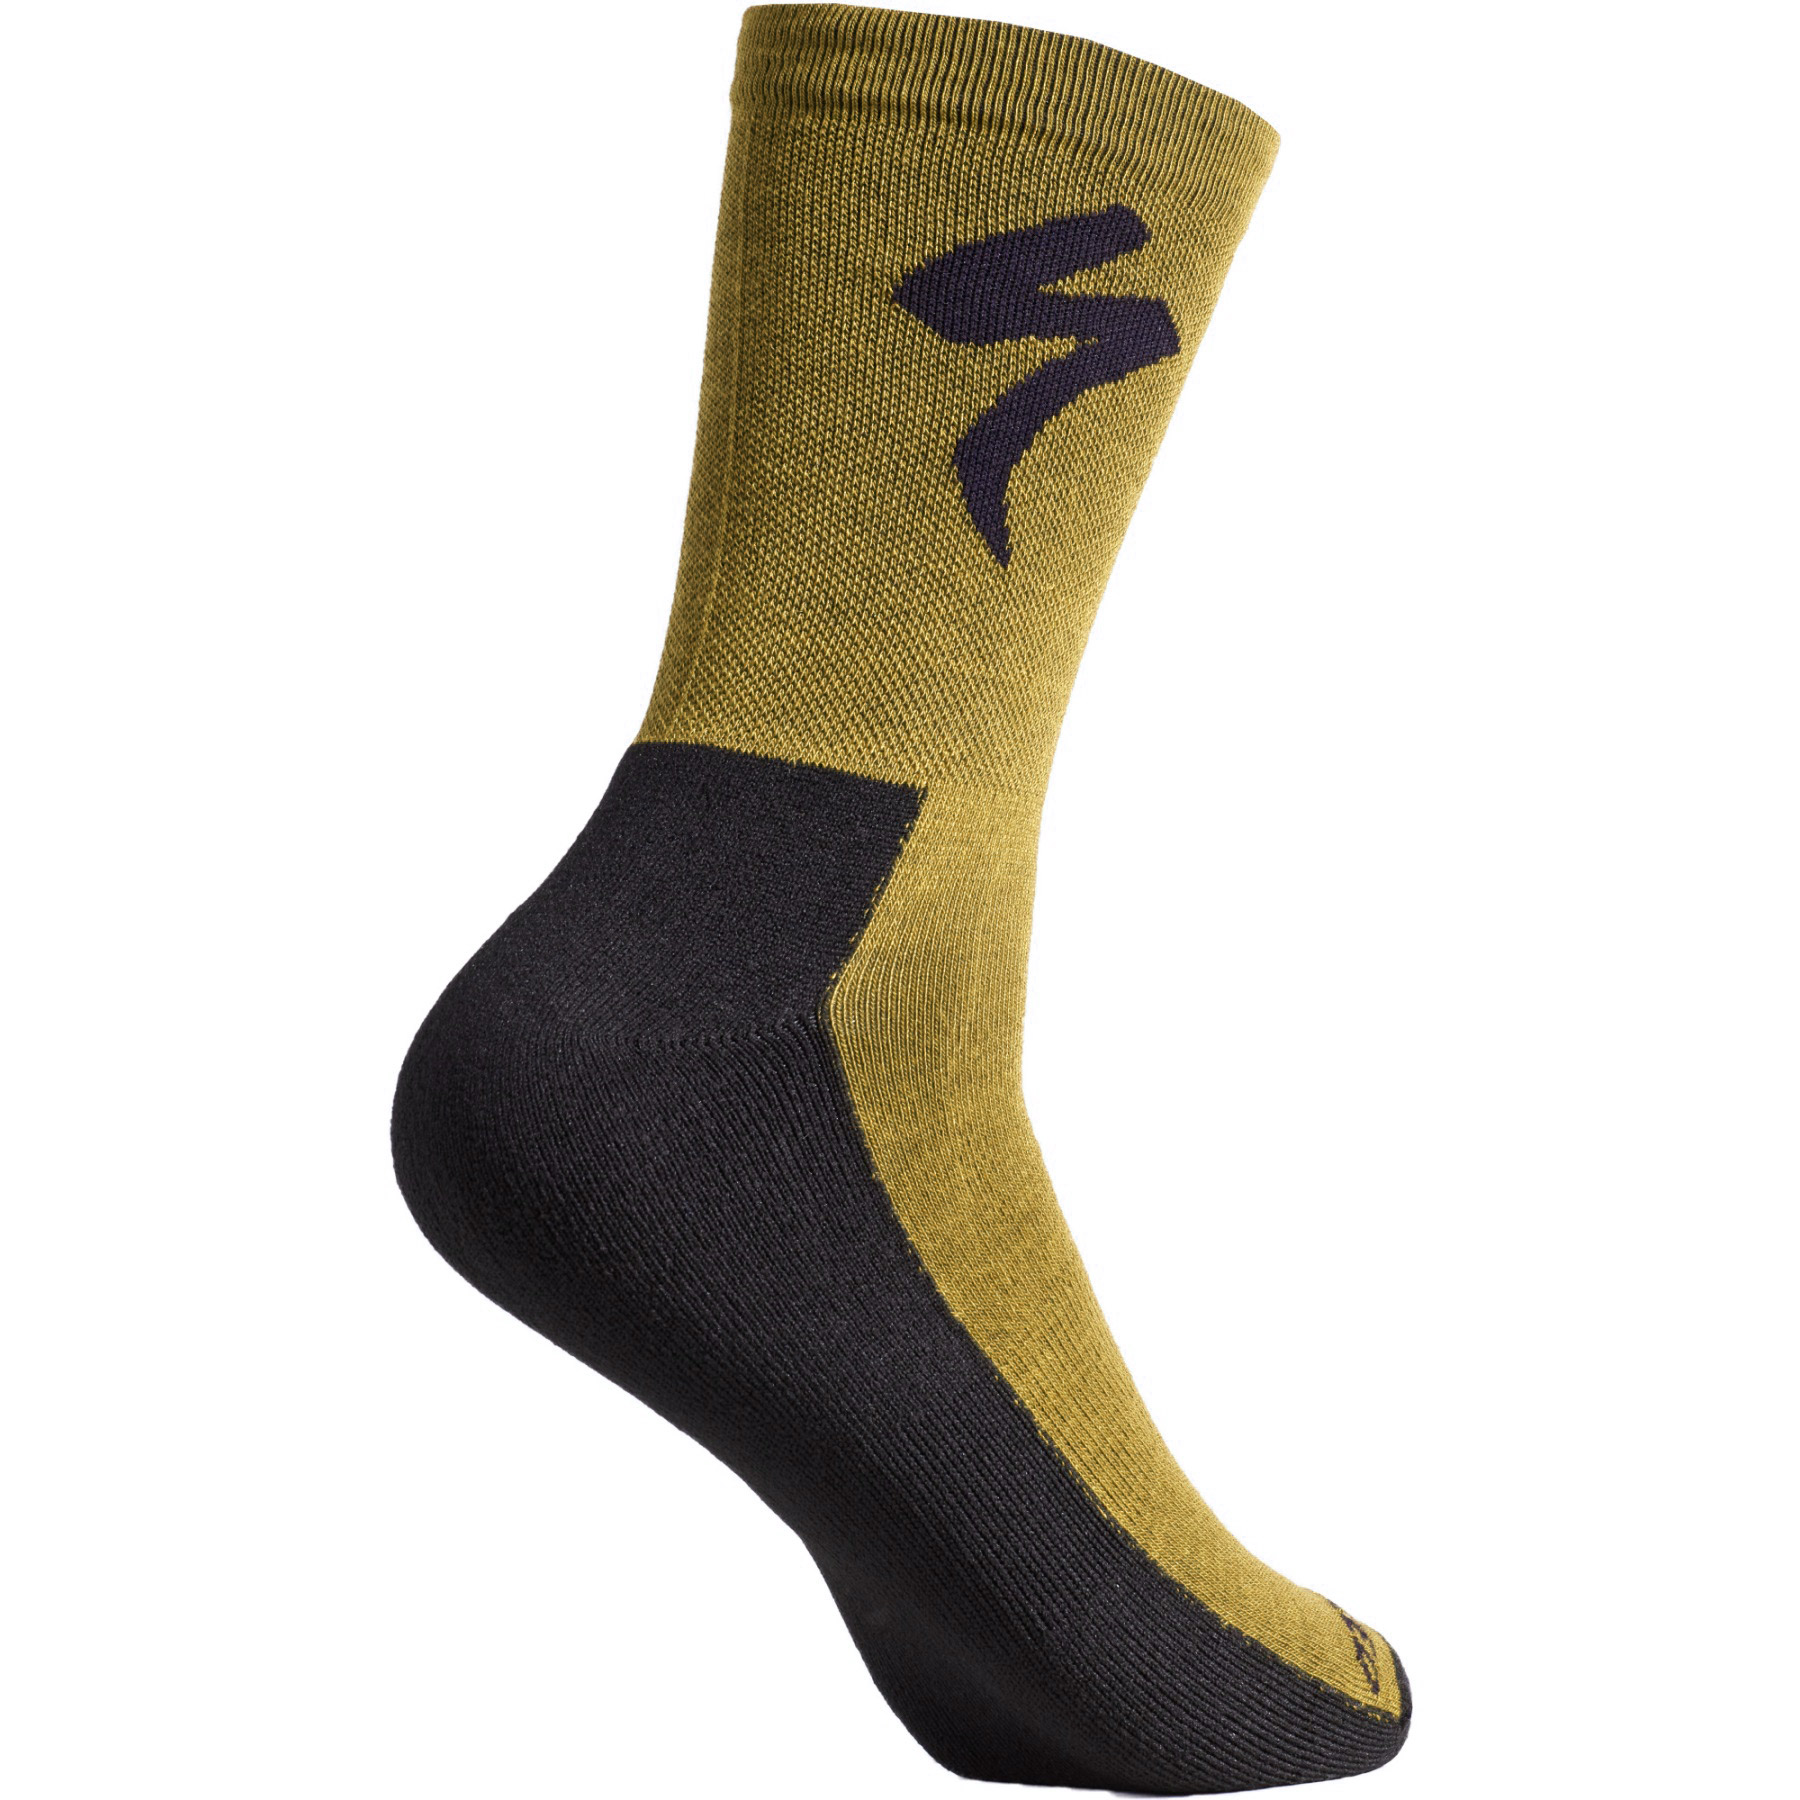 Produktbild von Specialized Primaloft Lightweight Tall Logo Socken - harvest gold